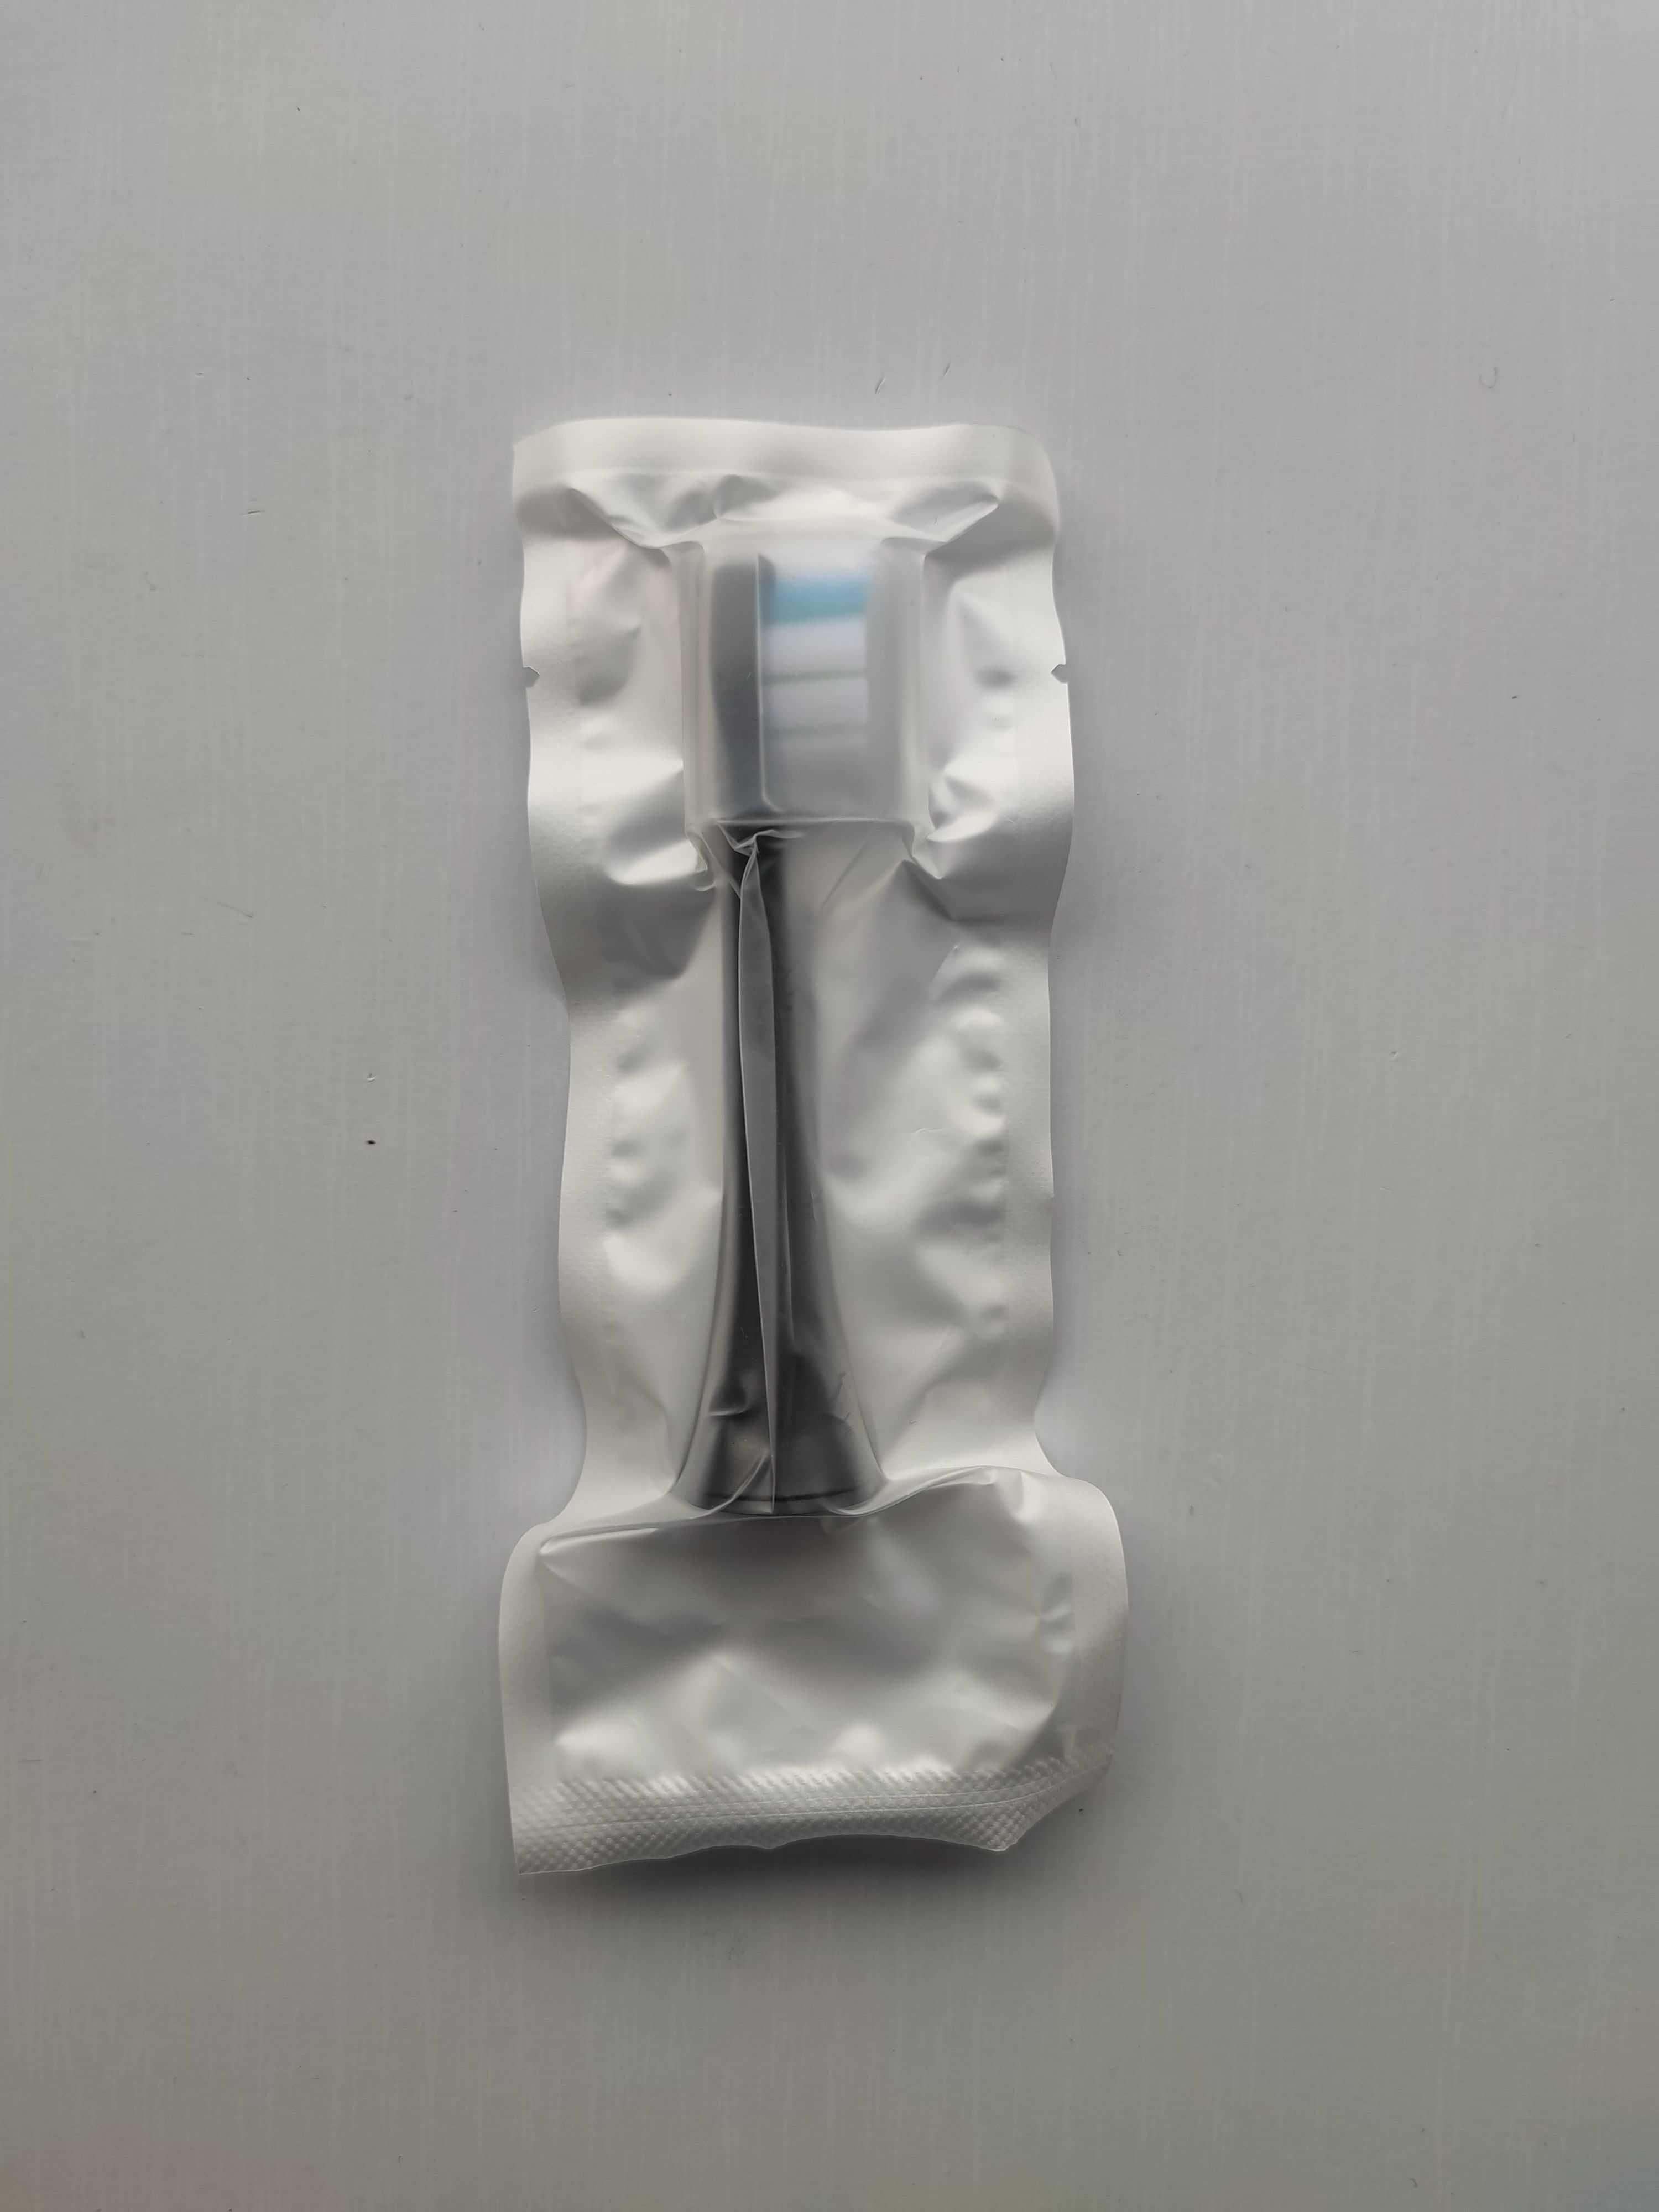 Насадка зубної щітки Xiaomi Soocas V1 V2 X1 X3 Pro X3U X5 D2 D3